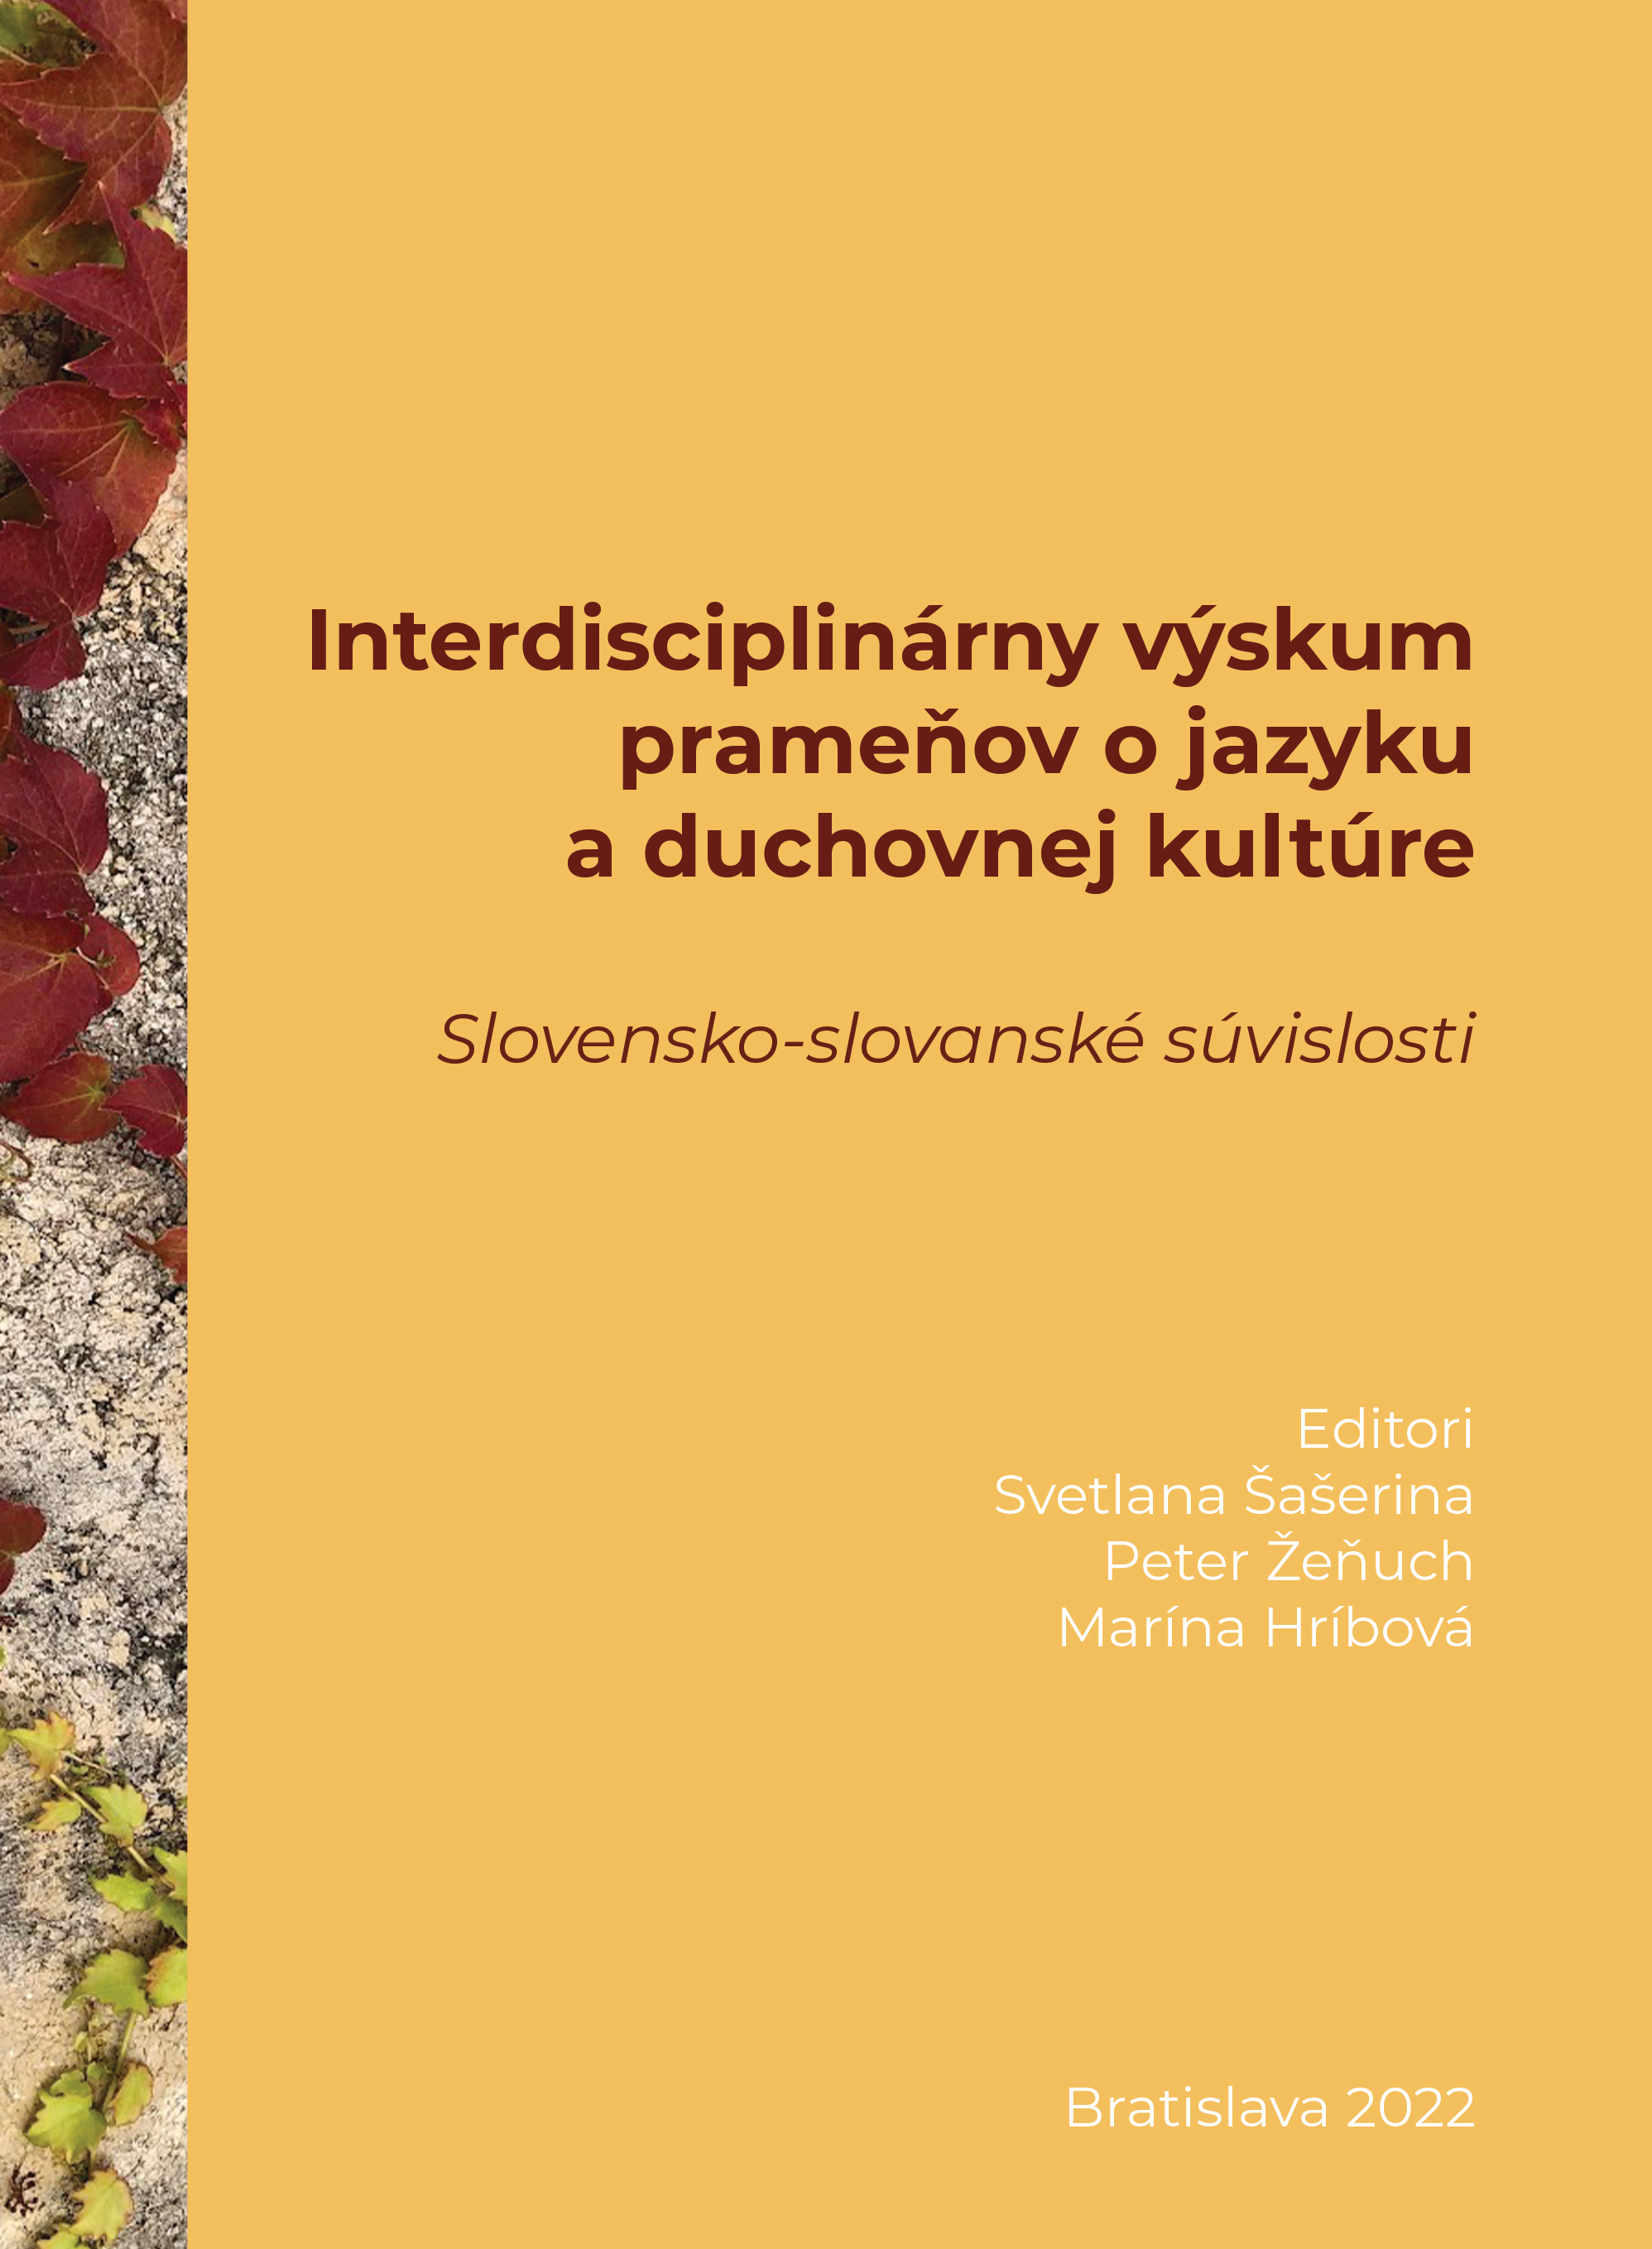 Interdisciplinárny výskum prameňov o jazyku a duchovnej kultúre